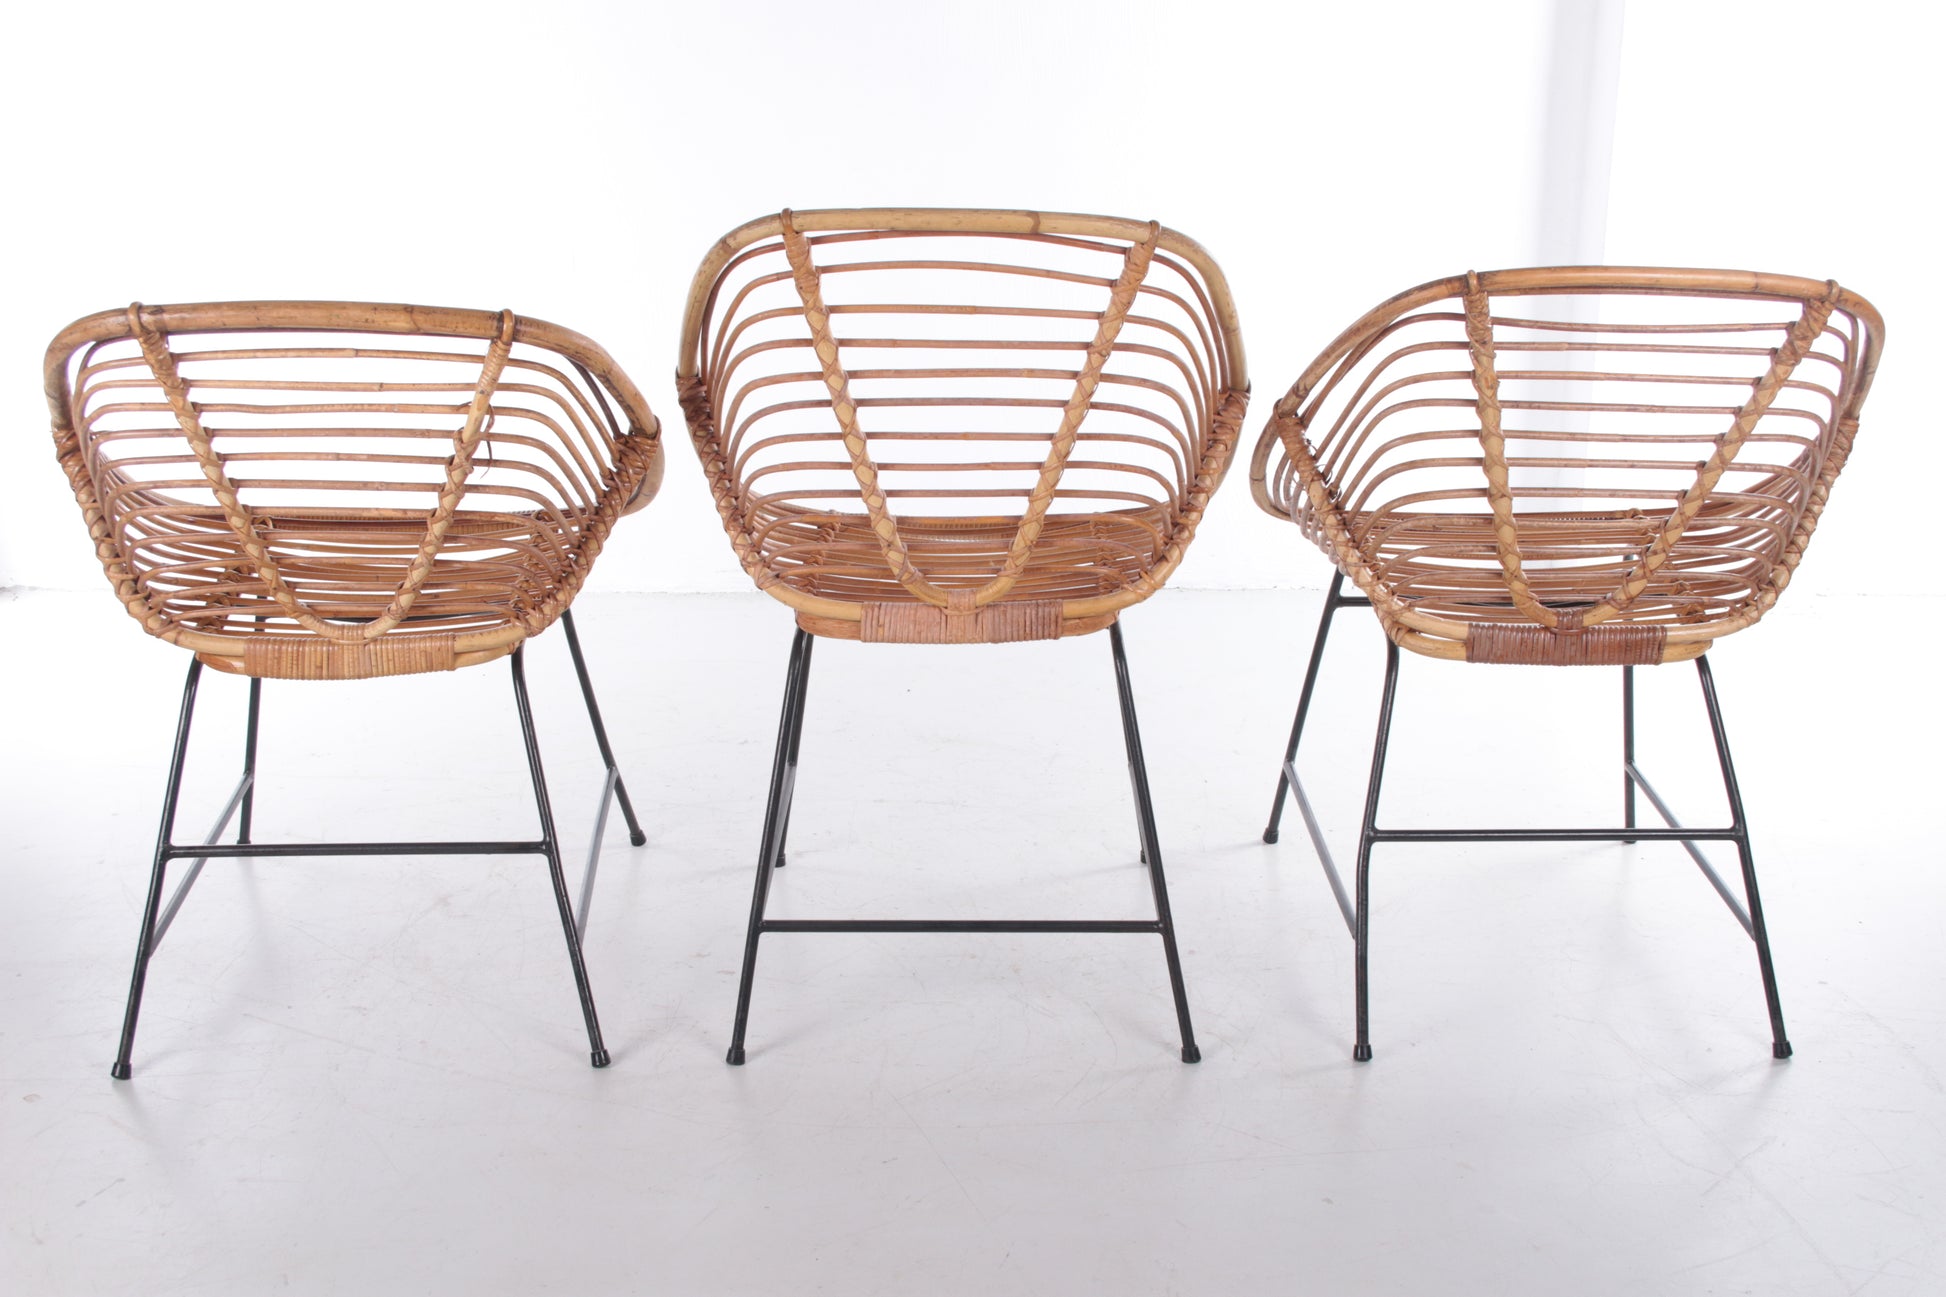 Vintage Bamboe Design stoel jaren60 Dirk van Sliedrecht Style,Set van 3 achterkant